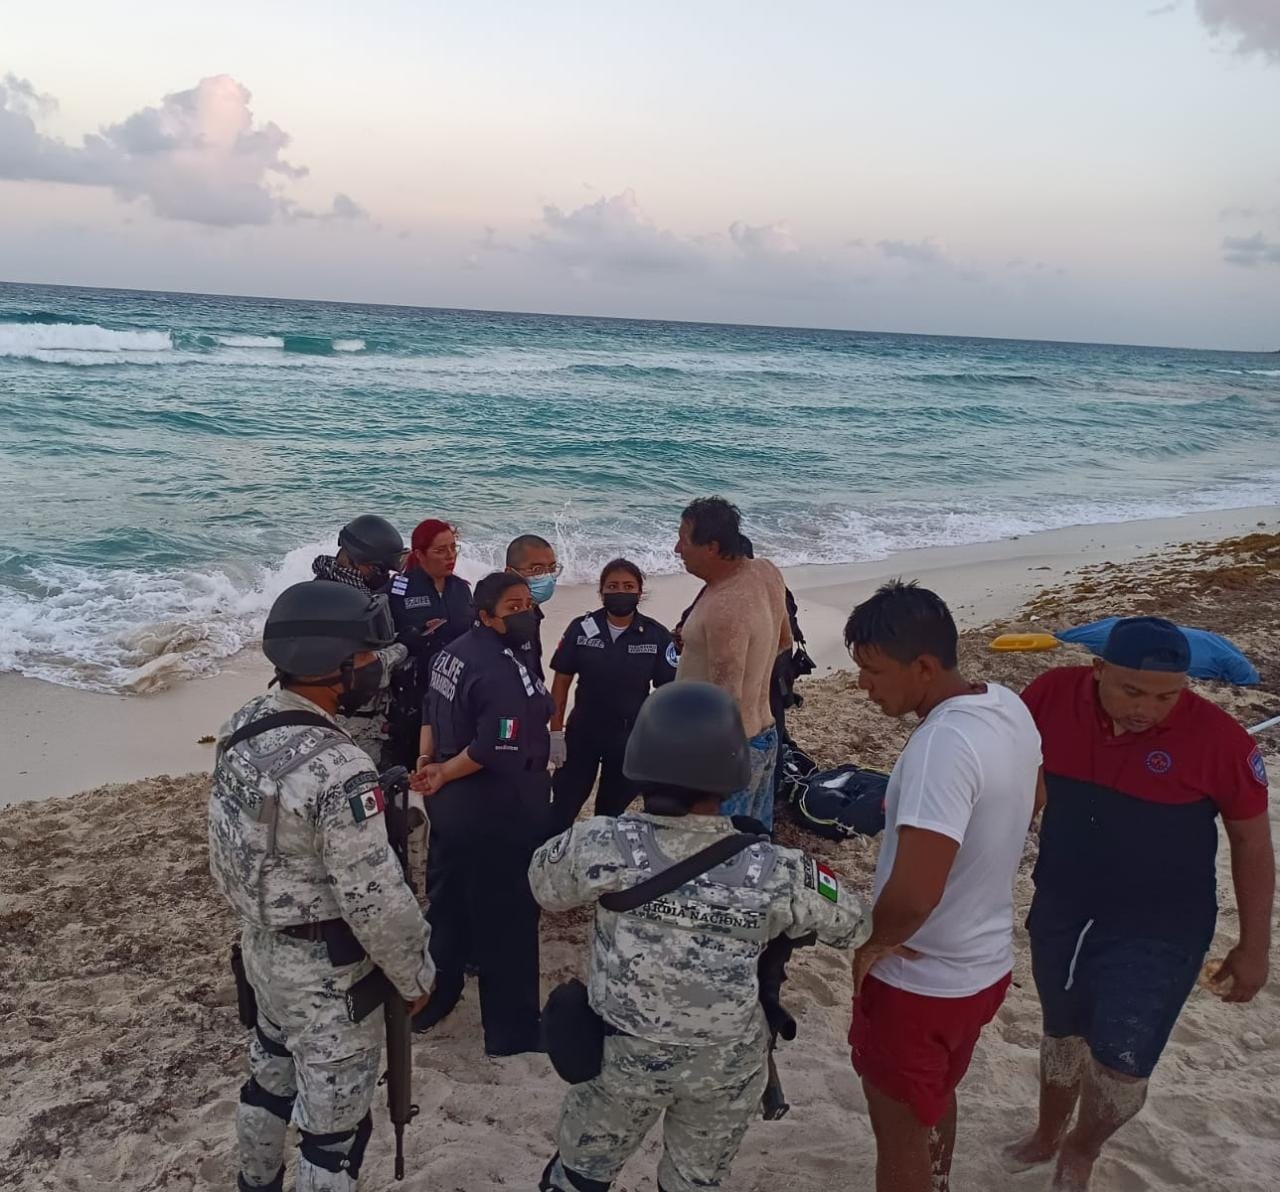 Turista regio muere ahogado en playa Delfines de Cancún: VIDEO